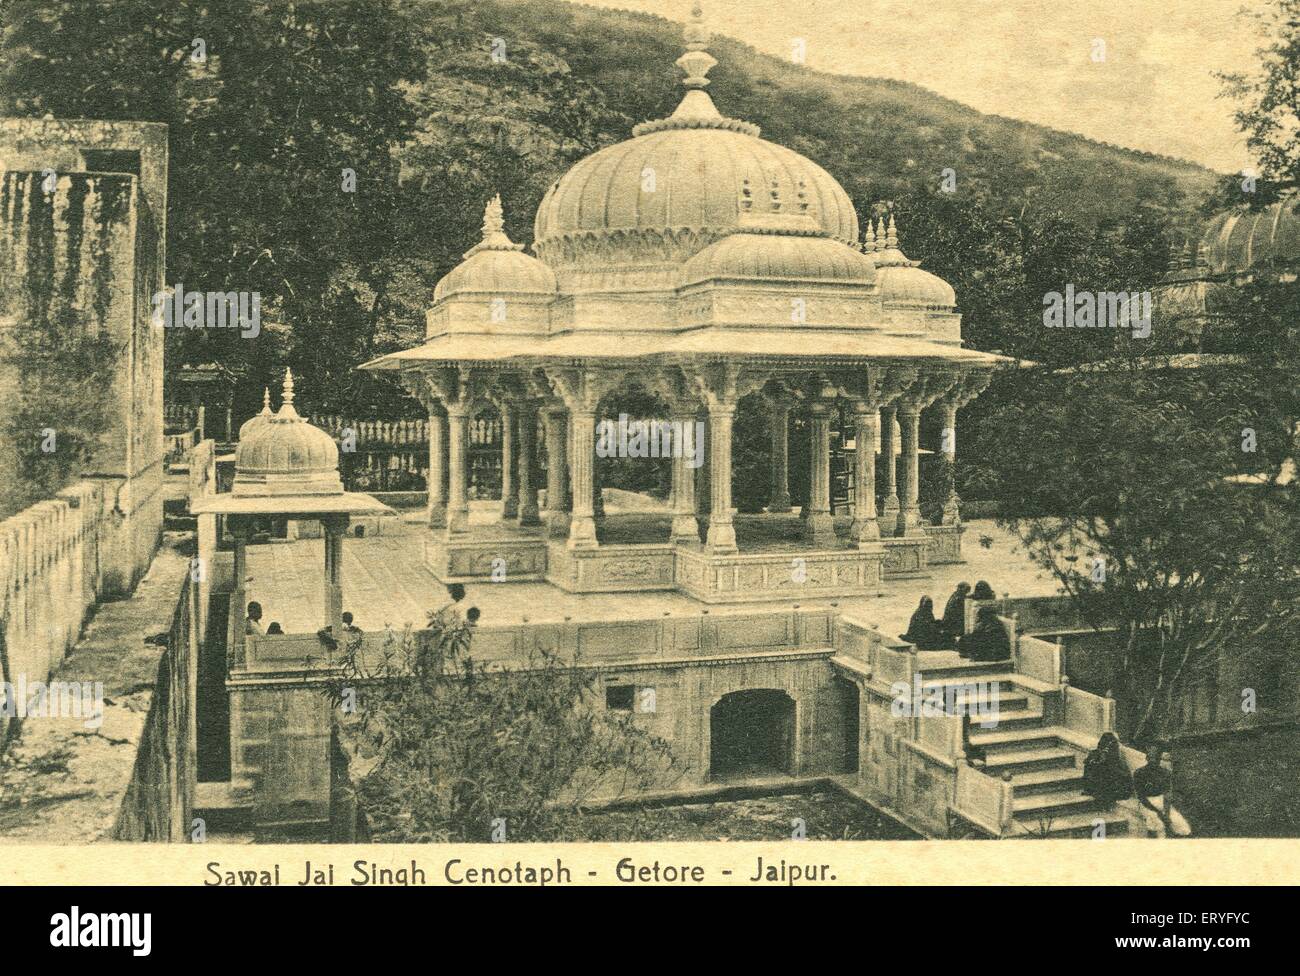 Sawai jai singh cenotaph royal getore gaitor ; Jaipur ; Rajasthan ; India Stock Photo